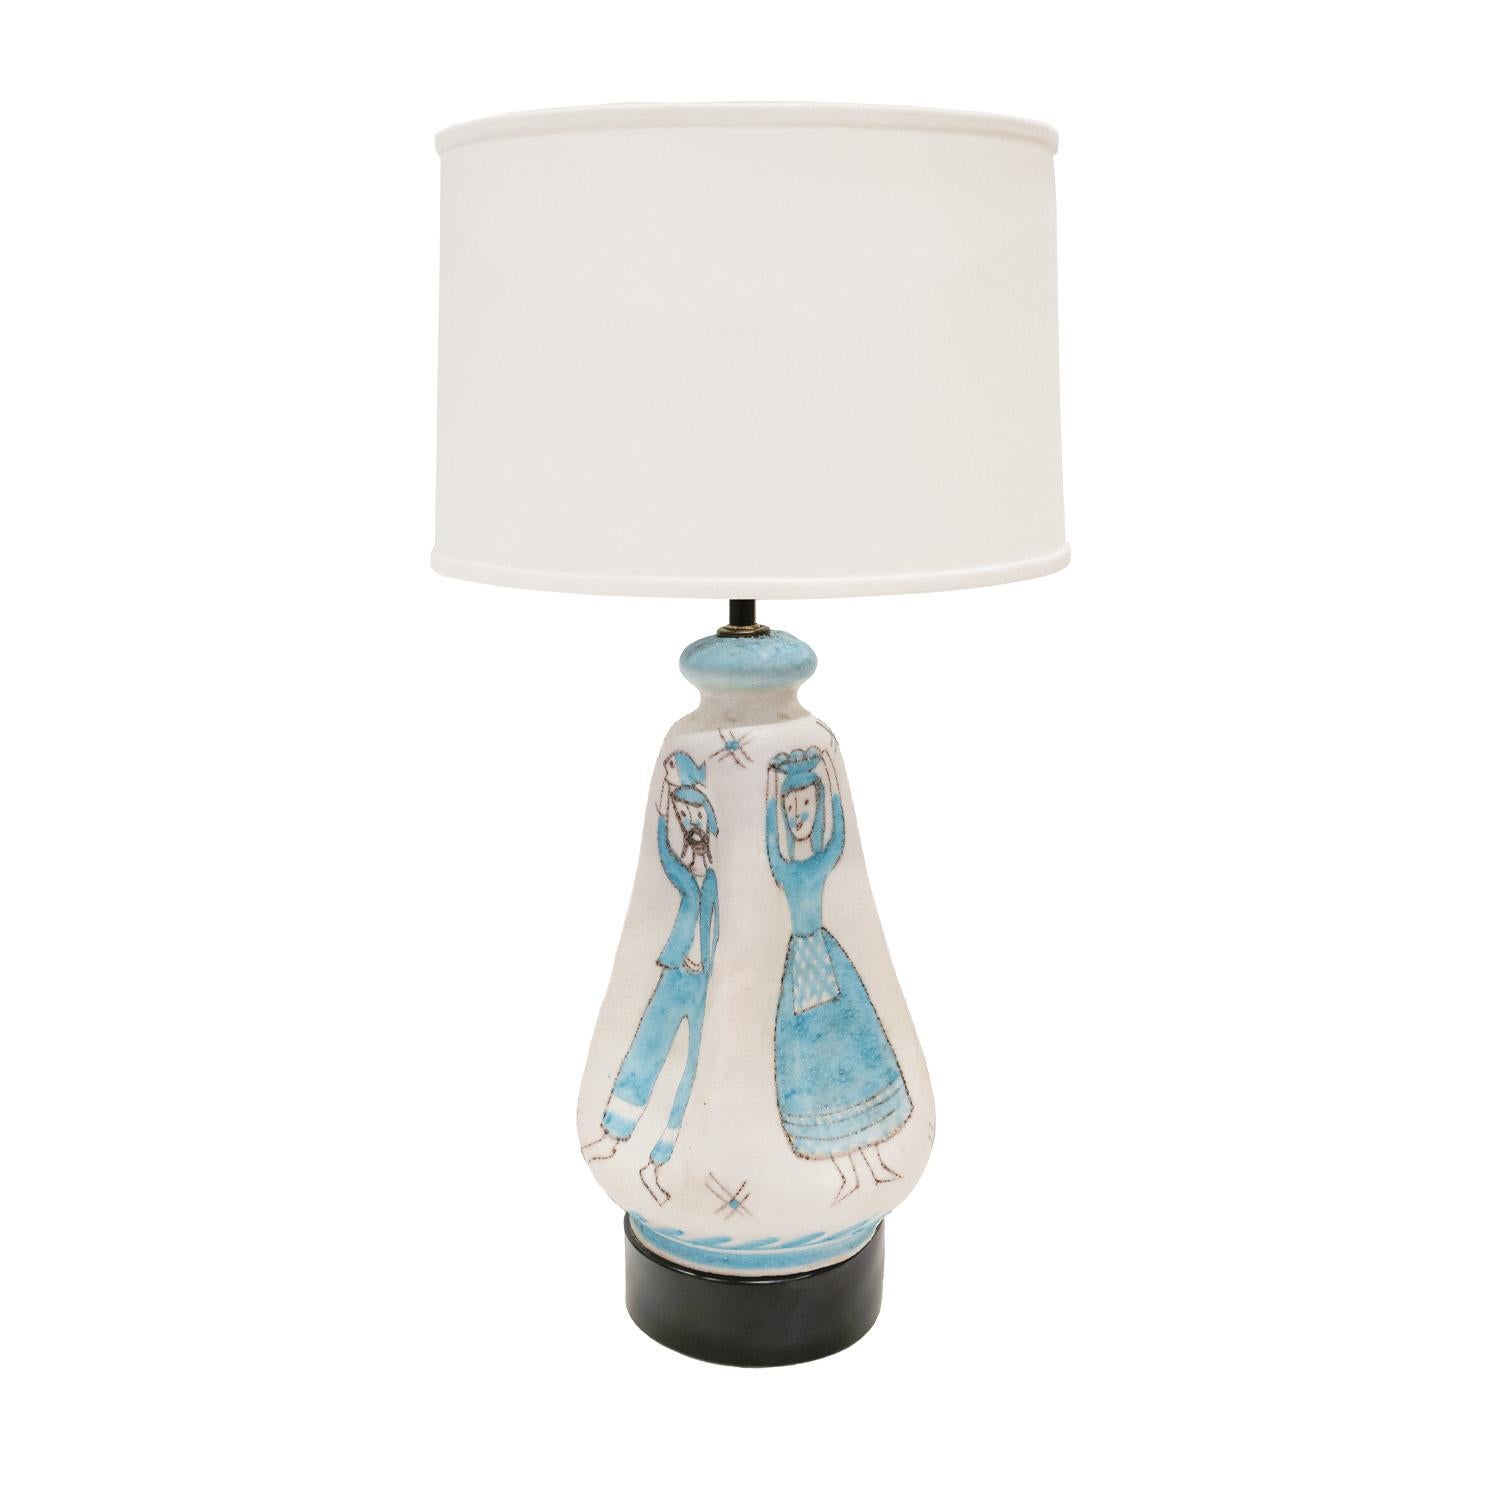 Lampe de table en céramique tournée à la main, chaque côté concave avec un motif pastoral, en émail salé bleu clair, brun et blanc, par C.A.S. Vietri, Italie, années 1950. Cette lampe est absolument magnifique.  Le meilleur de la céramique italienne